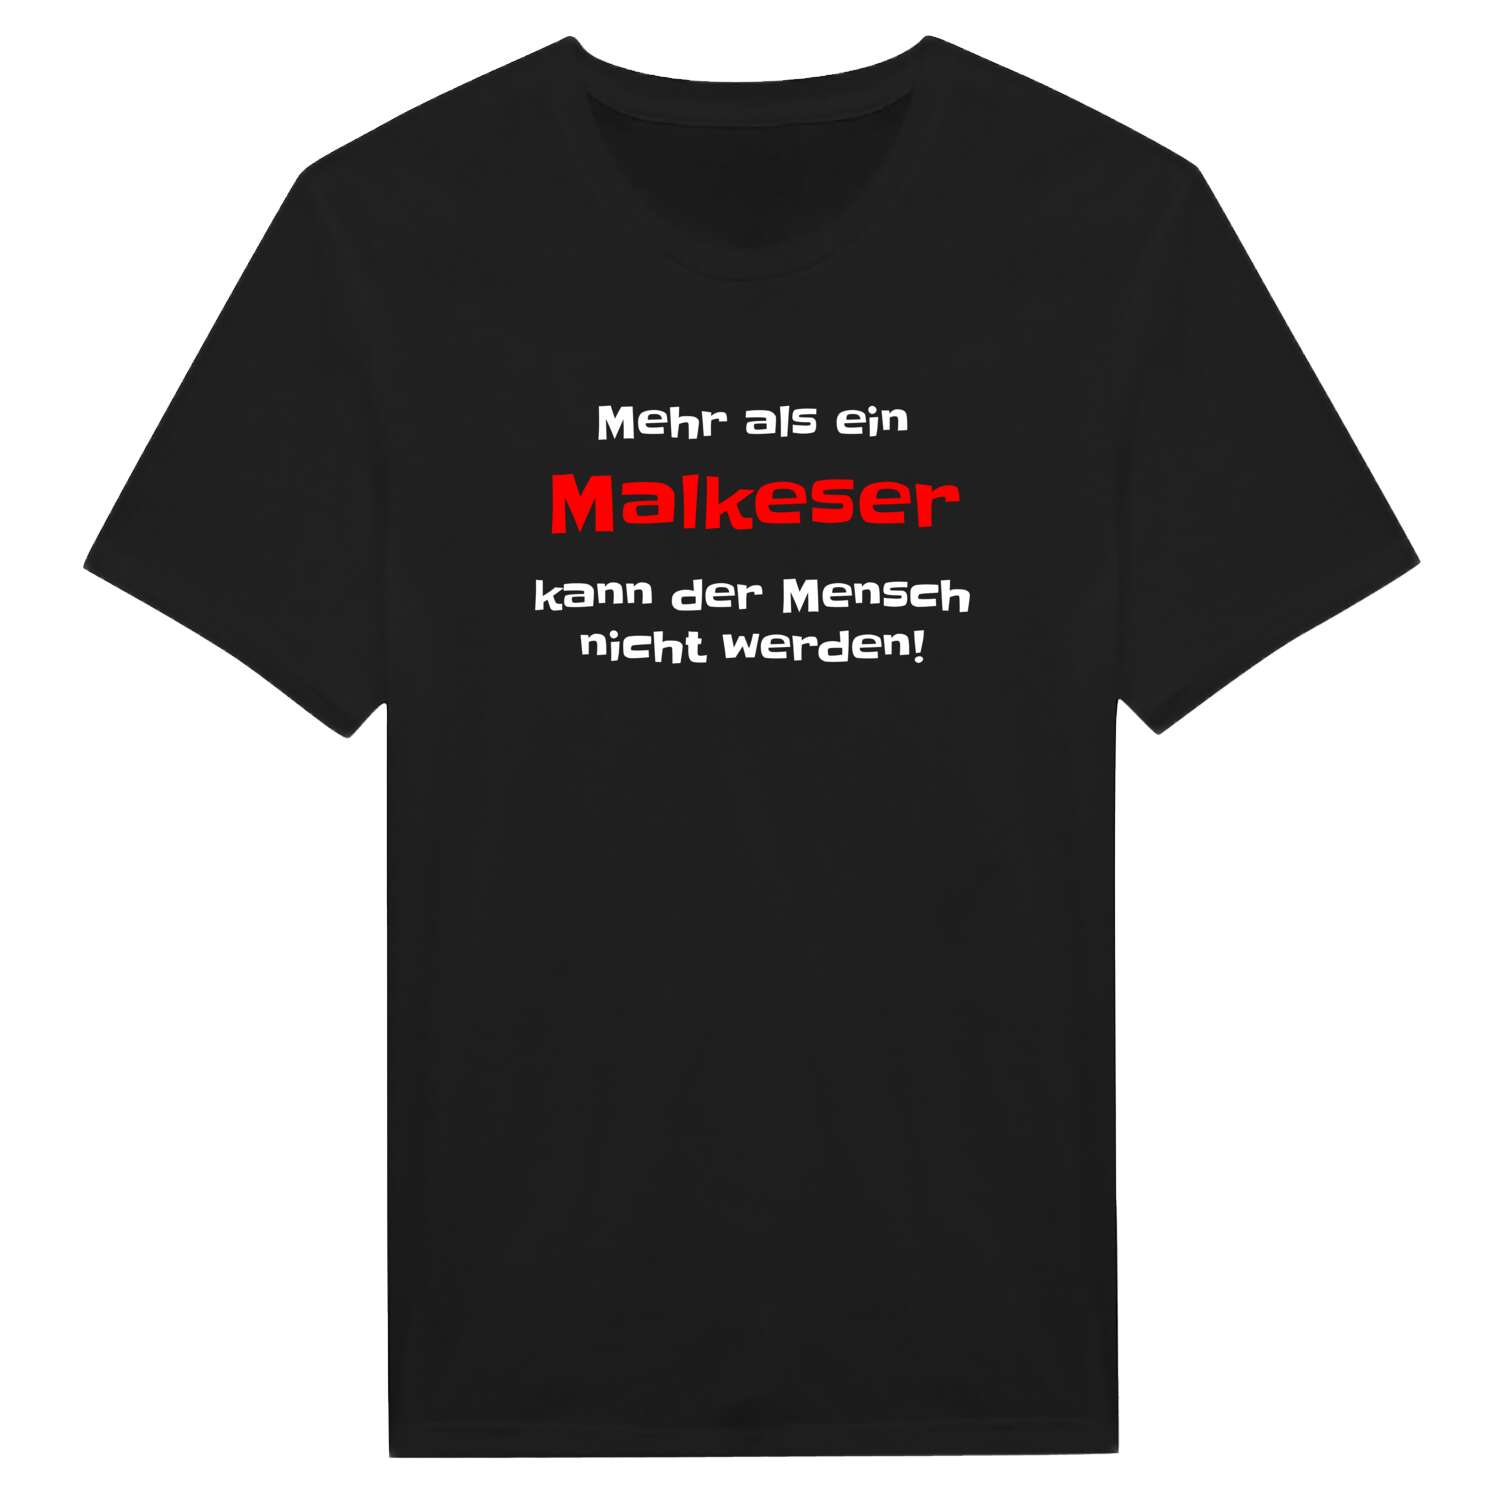 Malkes T-Shirt »Mehr als ein«